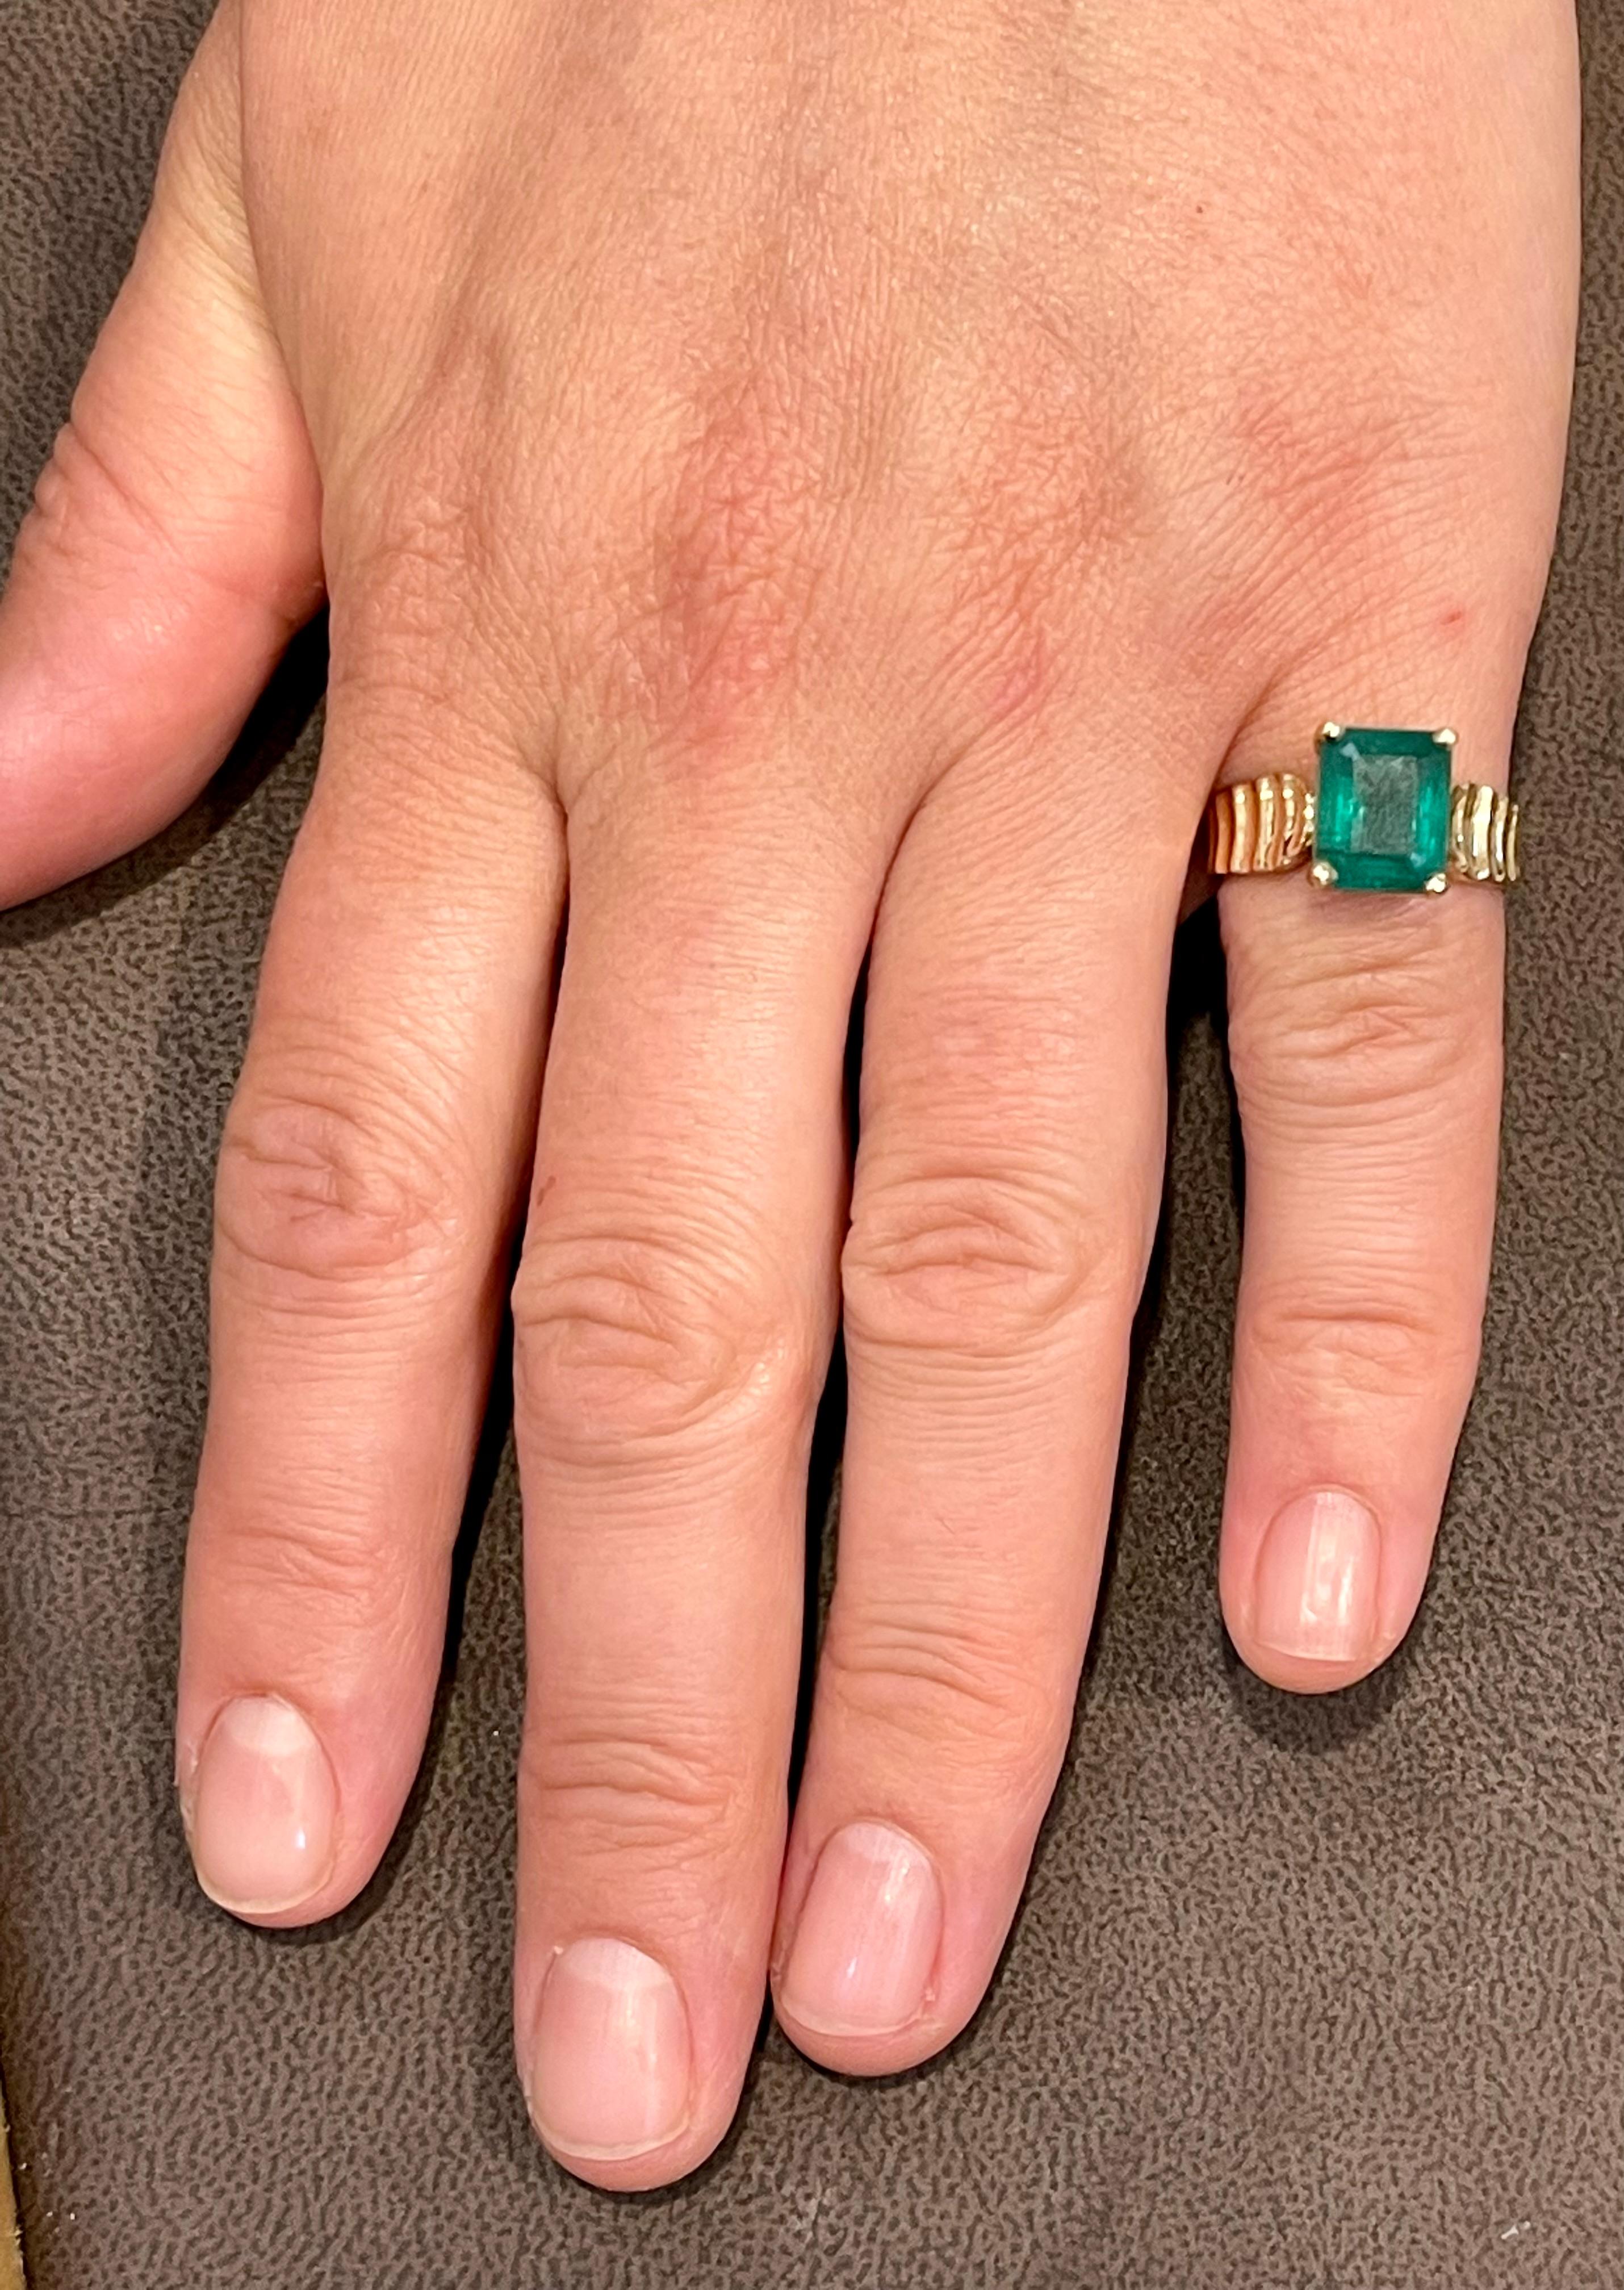 Ein klassischer Cocktail-Ring 
Natürlicher Smaragd  geschliffener Smaragd  Ring 14 Karat Gelbgold Größe 7
Der Smaragdschliff ist der beliebteste und gefragteste Smaragd  Smaragd 
Große Größe Smaragd Schliff Smaragd Intensive grüne Farbe mit viel